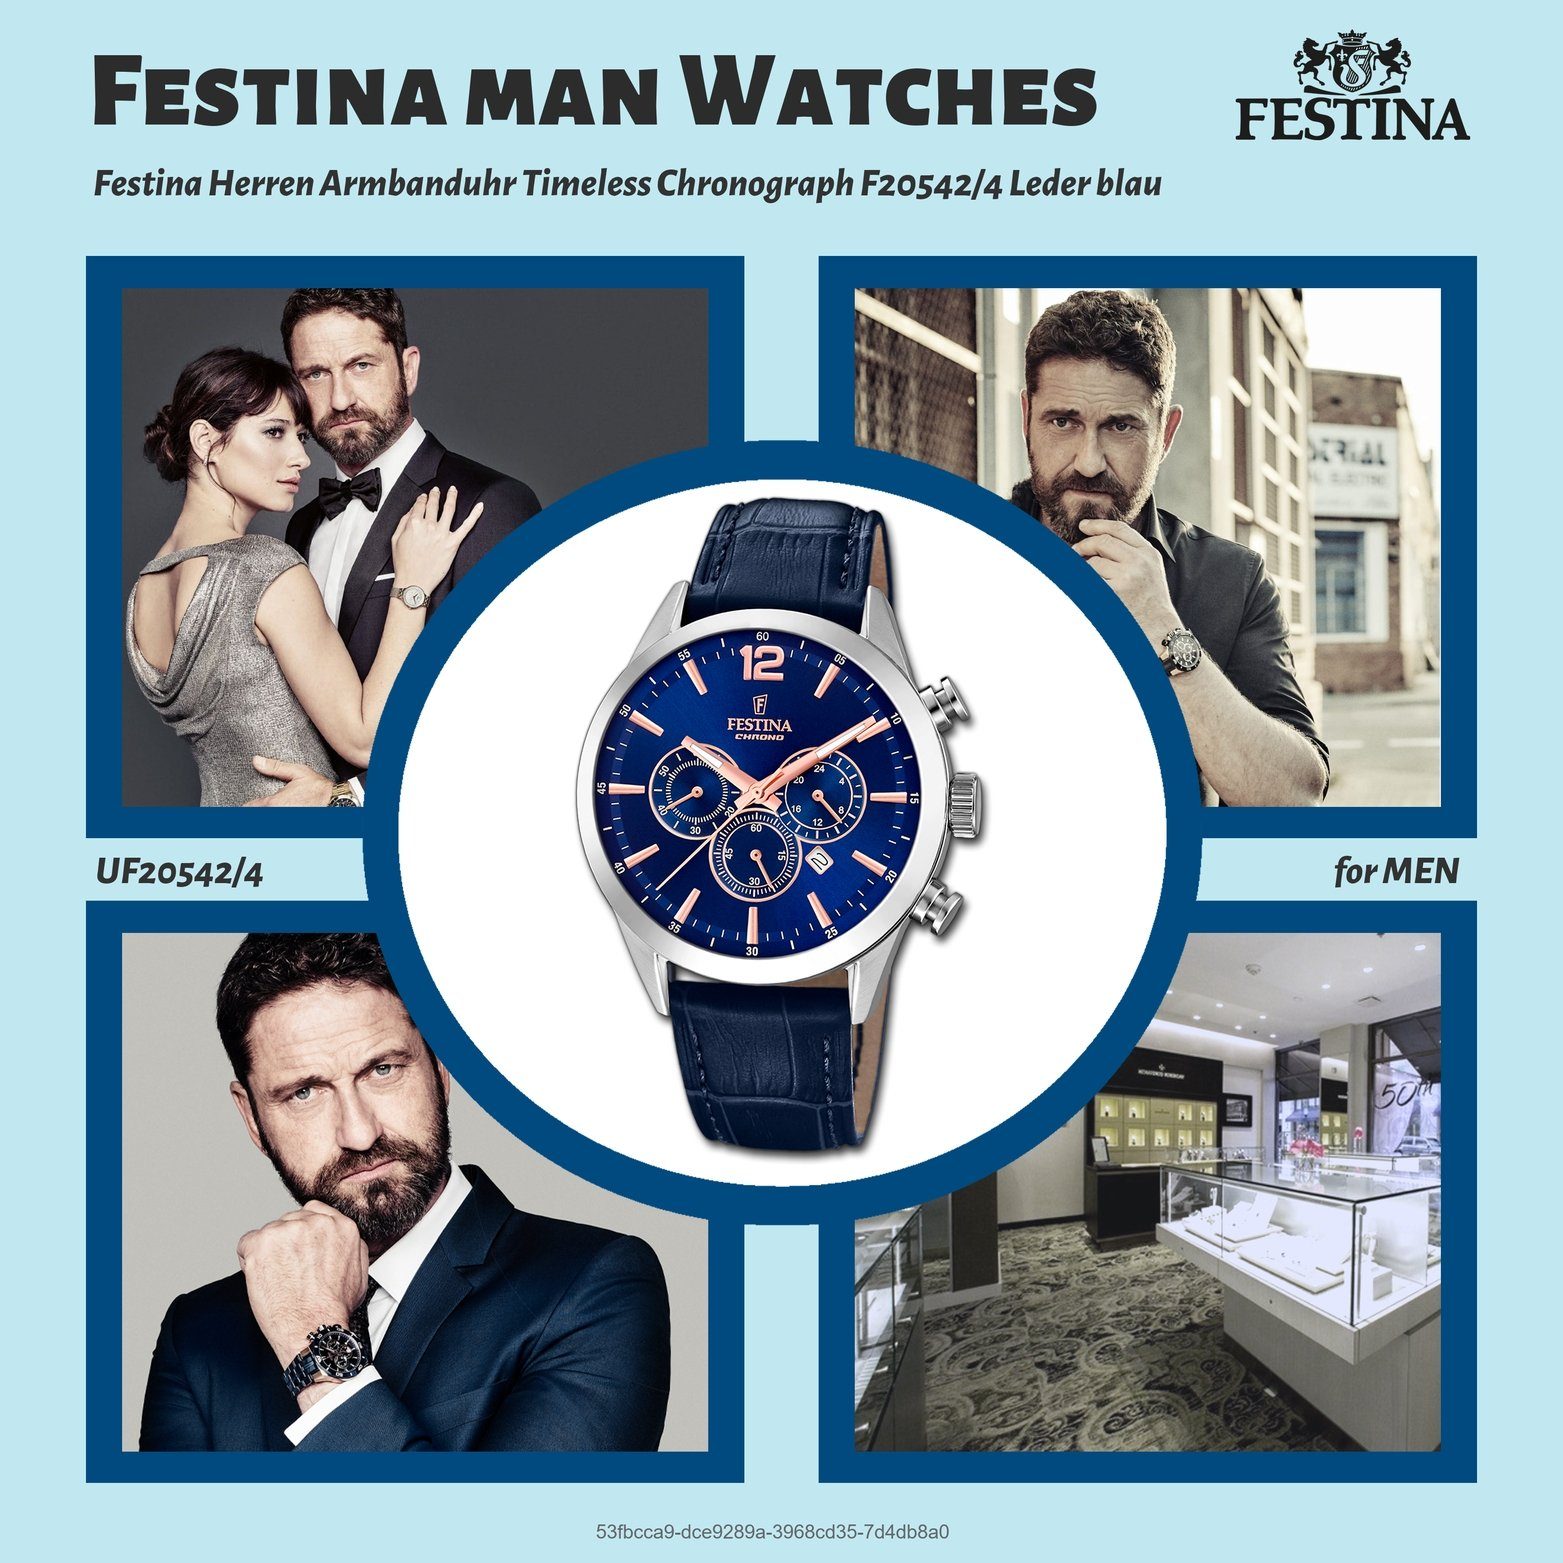 Festina Herren groß Leder 44mm), Fashion-S Herrenuhr Chronograph Gehäuse, (ca. Festina rundes Lederarmband, Uhr F20542/4, mit